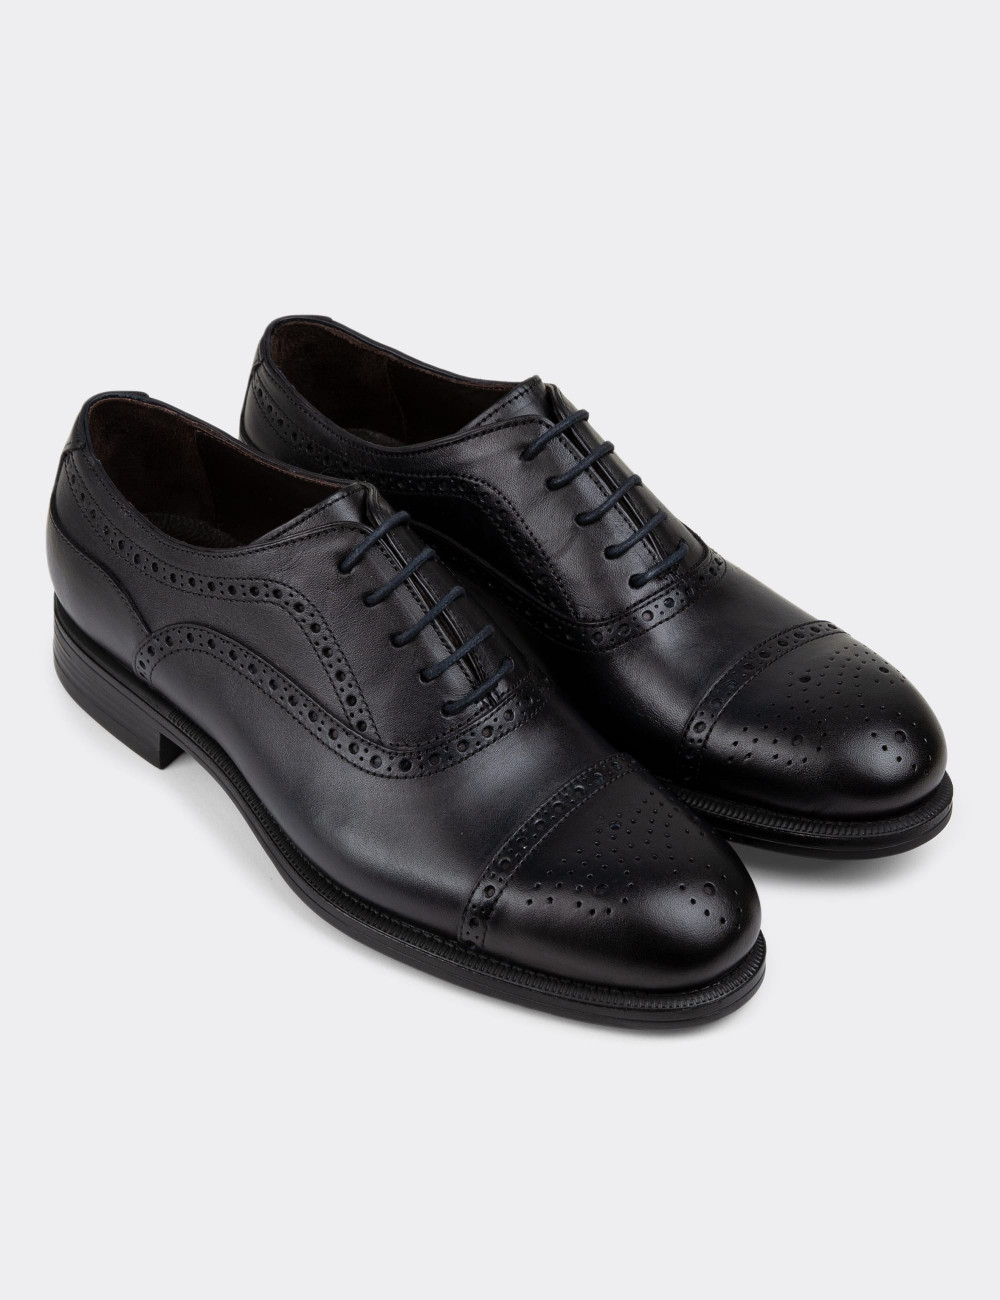 Hakiki Deri Lacivert Klasik Erkek Ayakkabı - 01813MLCVC01